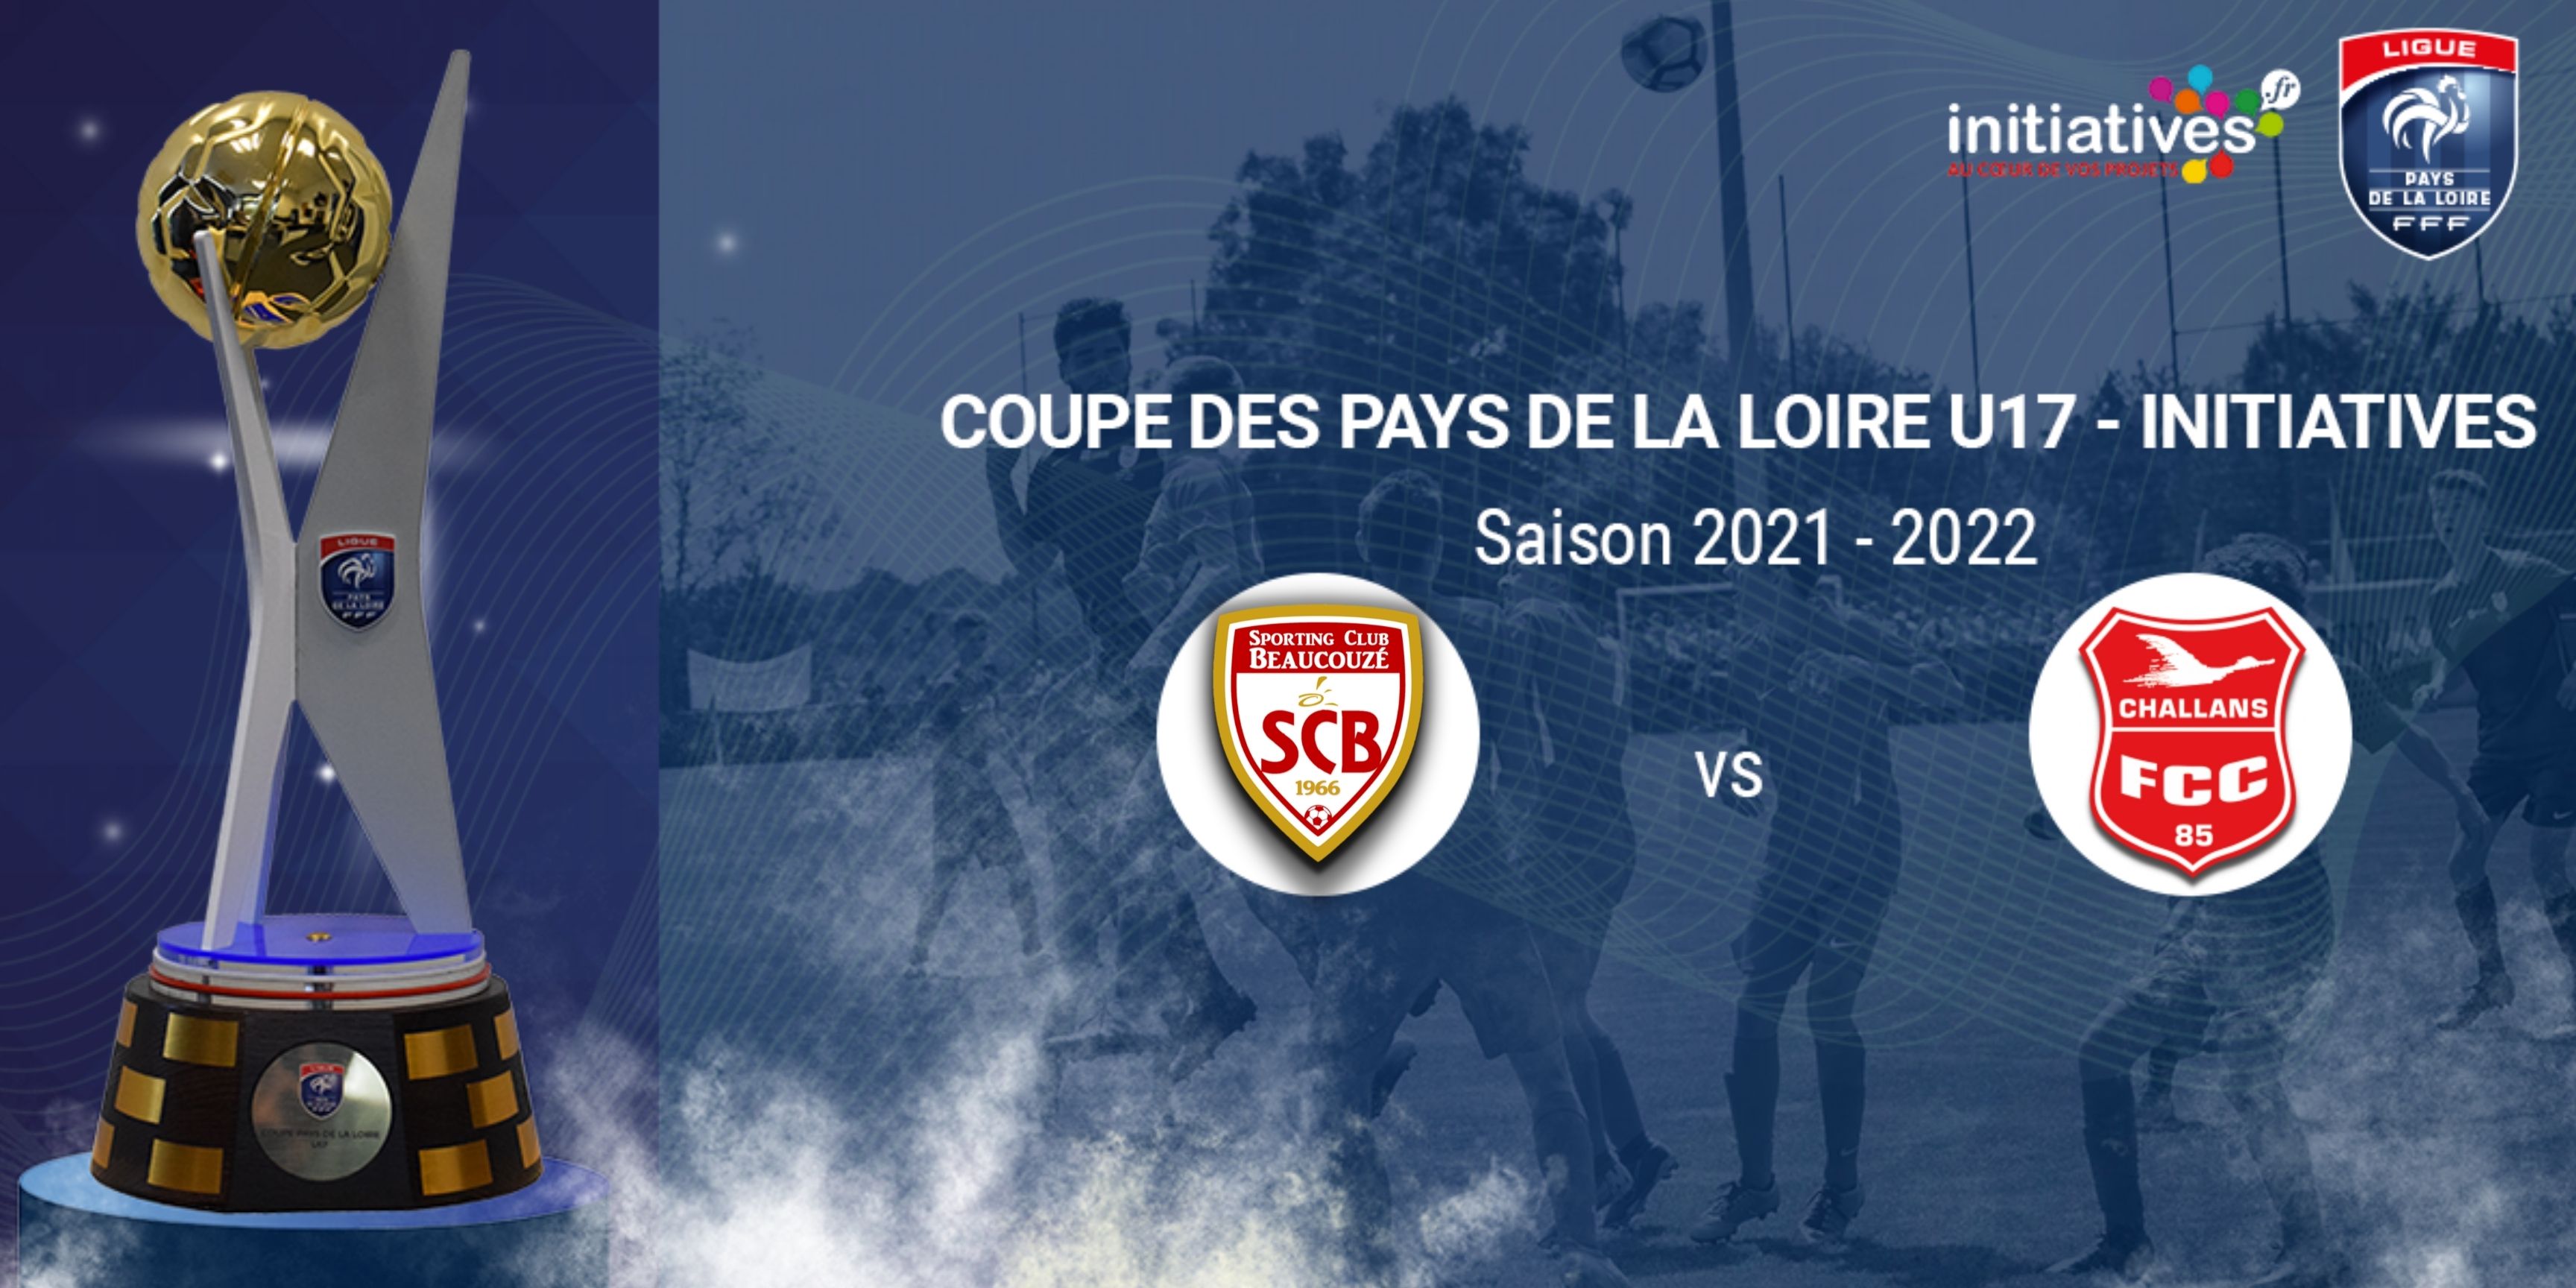 Tirage Quart de Finale de la Coupe des Pays de la Loire Initiatives U17 !